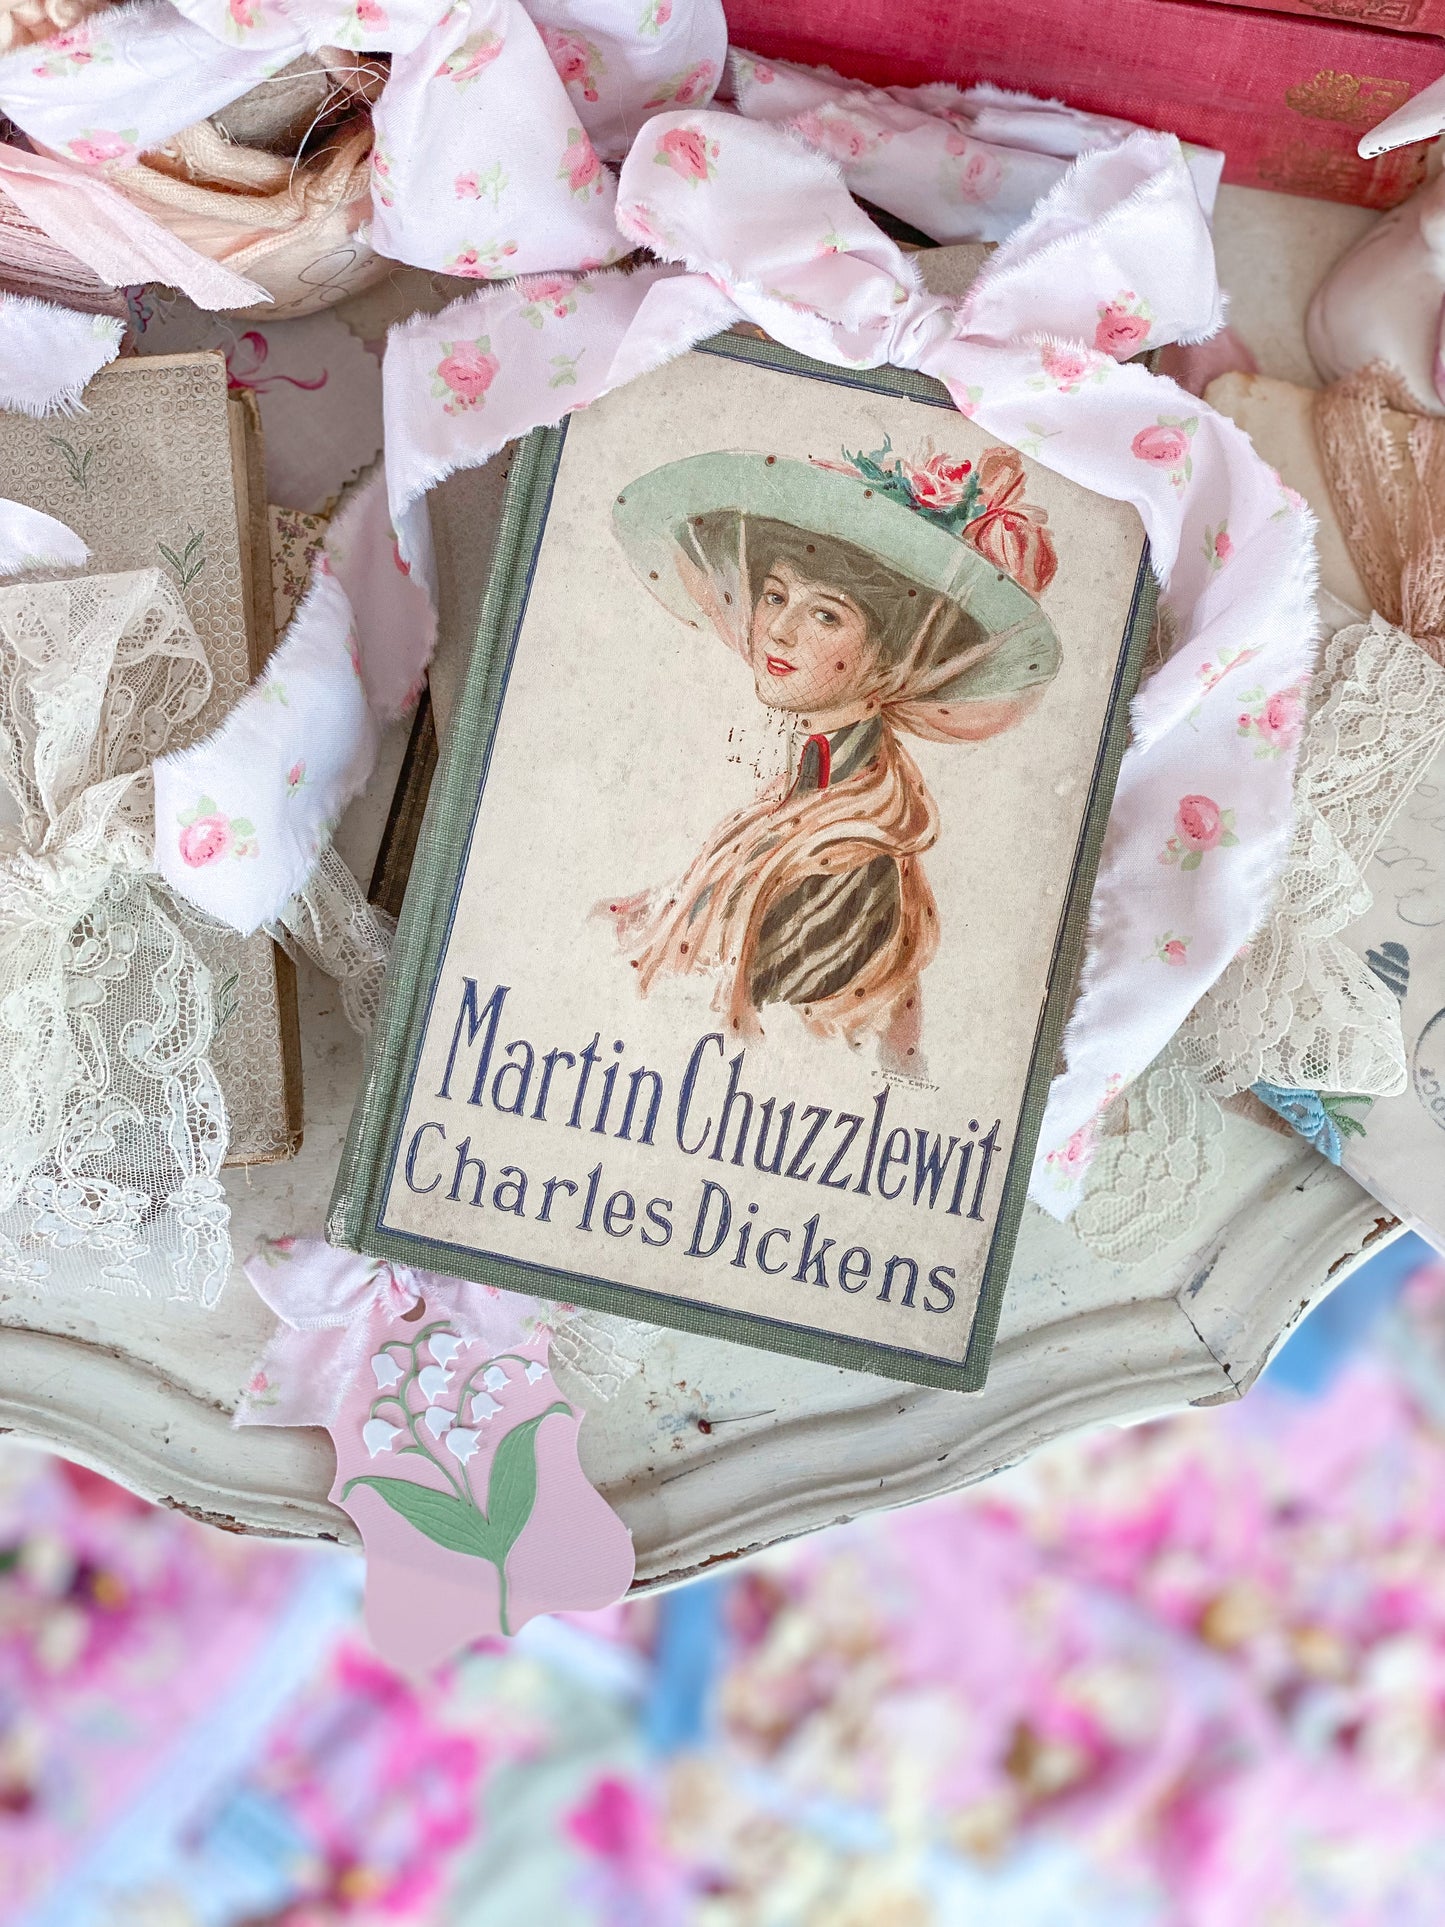 Martin Chuzzlewit de Charles Dickens - Portada de dama eduardiana